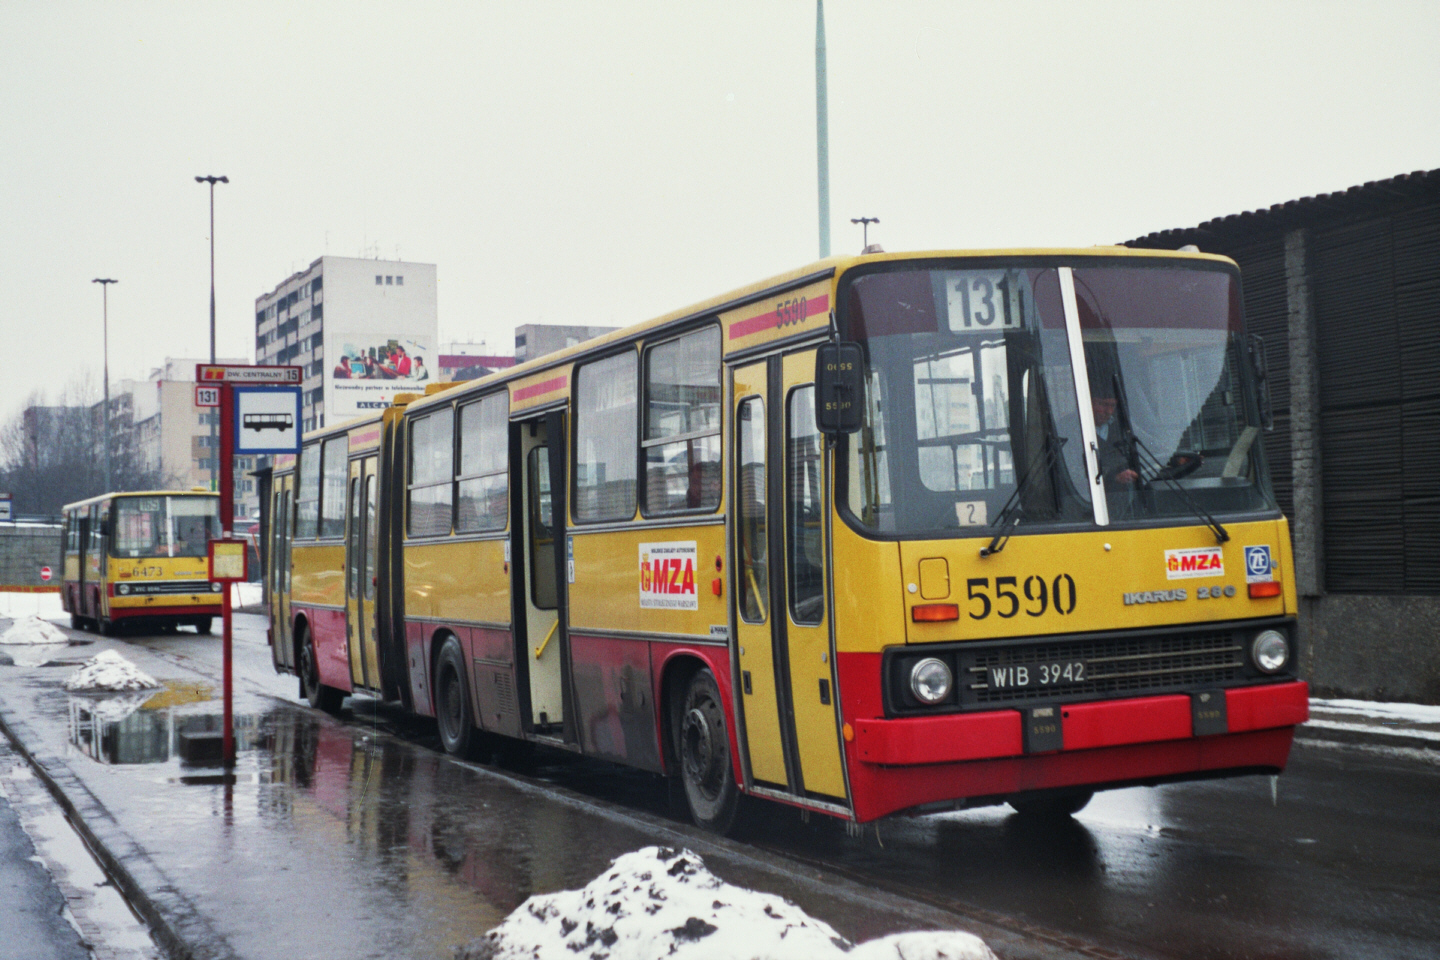 5590
Ikarus 280, produkcja 1995, kasacja 2013.
Ikarusy z rocznika '95 dotarły do Warszawy w drugiej połowie października 1995, jednak ich liniowa eksploatacja rozpoczęła się dopiero na przełomie stycznia i lutego 1996, kiedy panowała niezwykle ciężka zima.
Wóz 5590 podczas jednej z pierwszych jazd odpoczywa na krańcu Dw. Centralny (poziom -1), gdzie aktualnie znajdują się Złote Tarasy.
Wozem 5590 od nowości jeździł pan Witek, który przesiadł się z 2940, a następnie został instruktorem w ZTM.

Foto: P. B. Jezierski
Słowa kluczowe: 5590